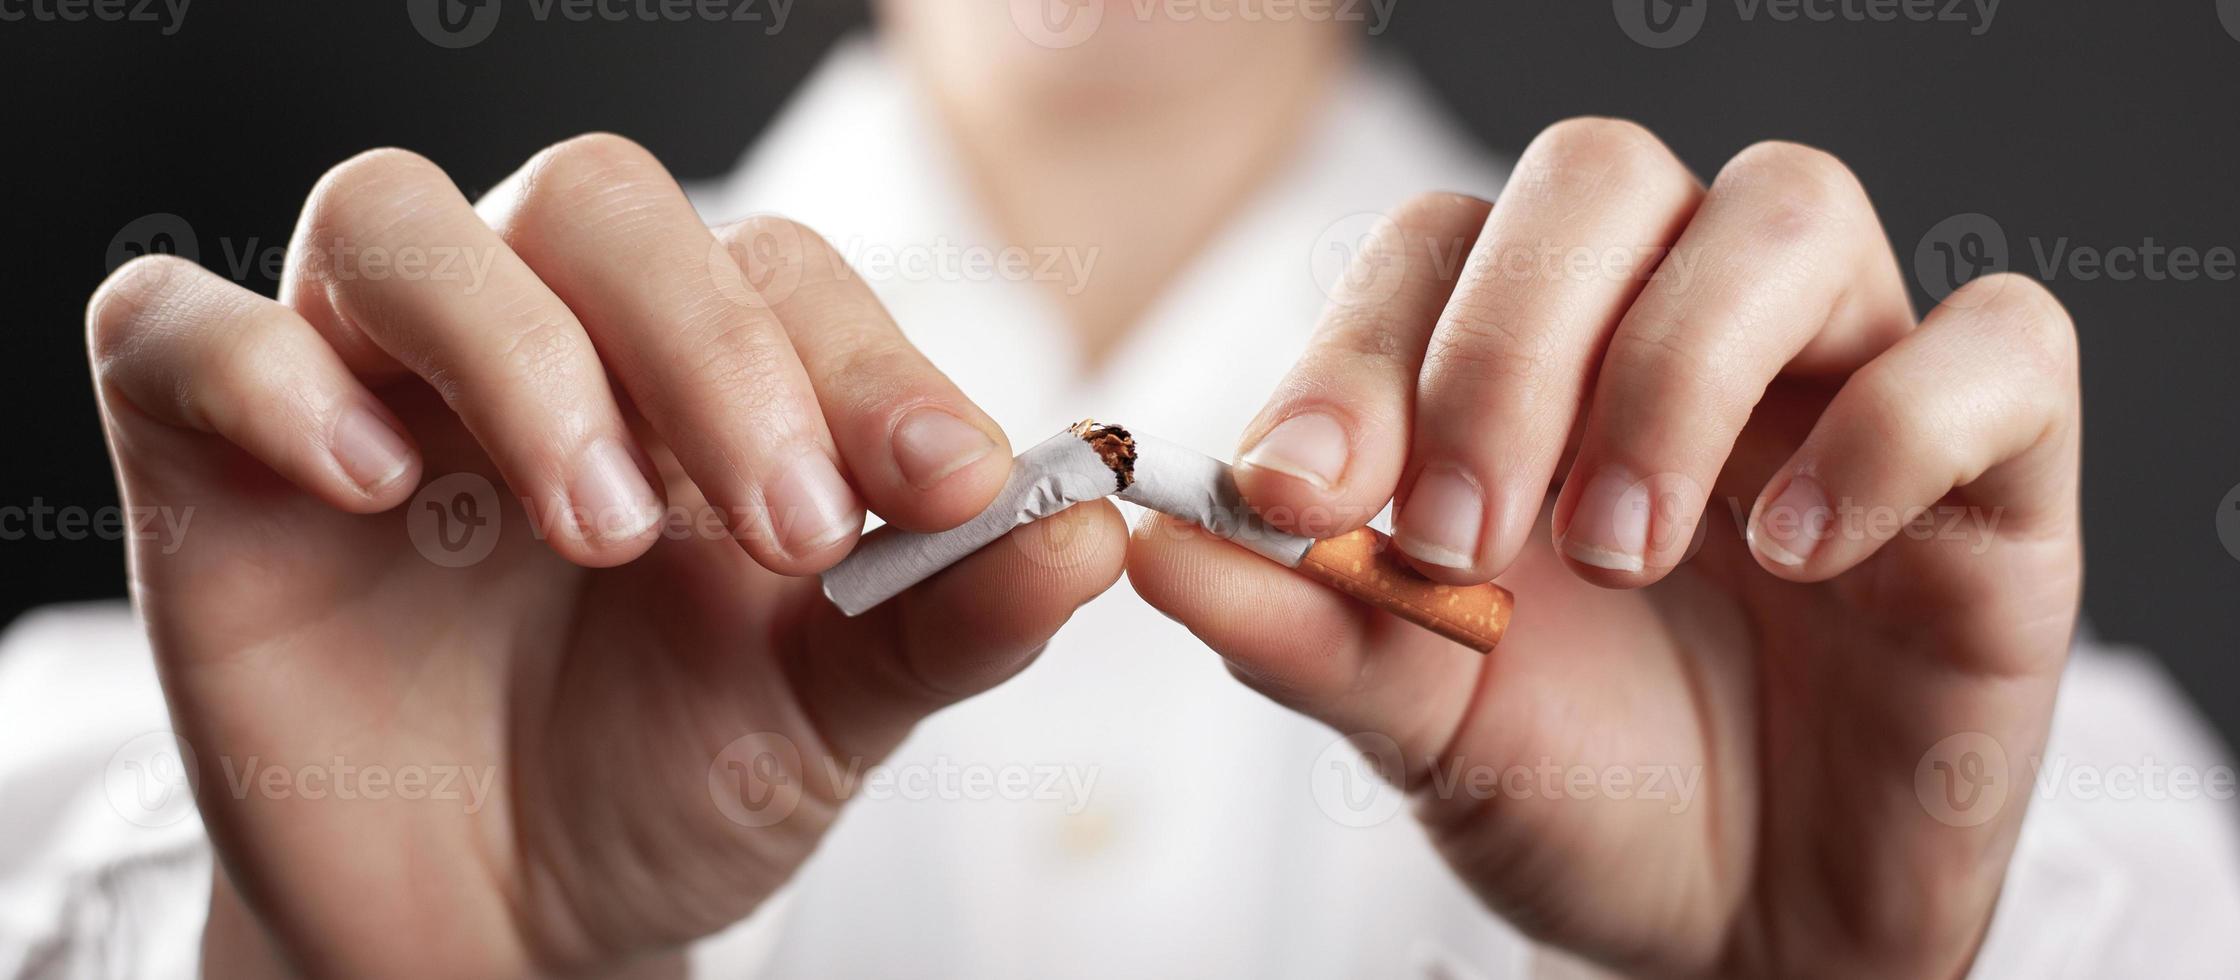 sluta röka koncept med en trasig cigarett i händerna på en läkare foto